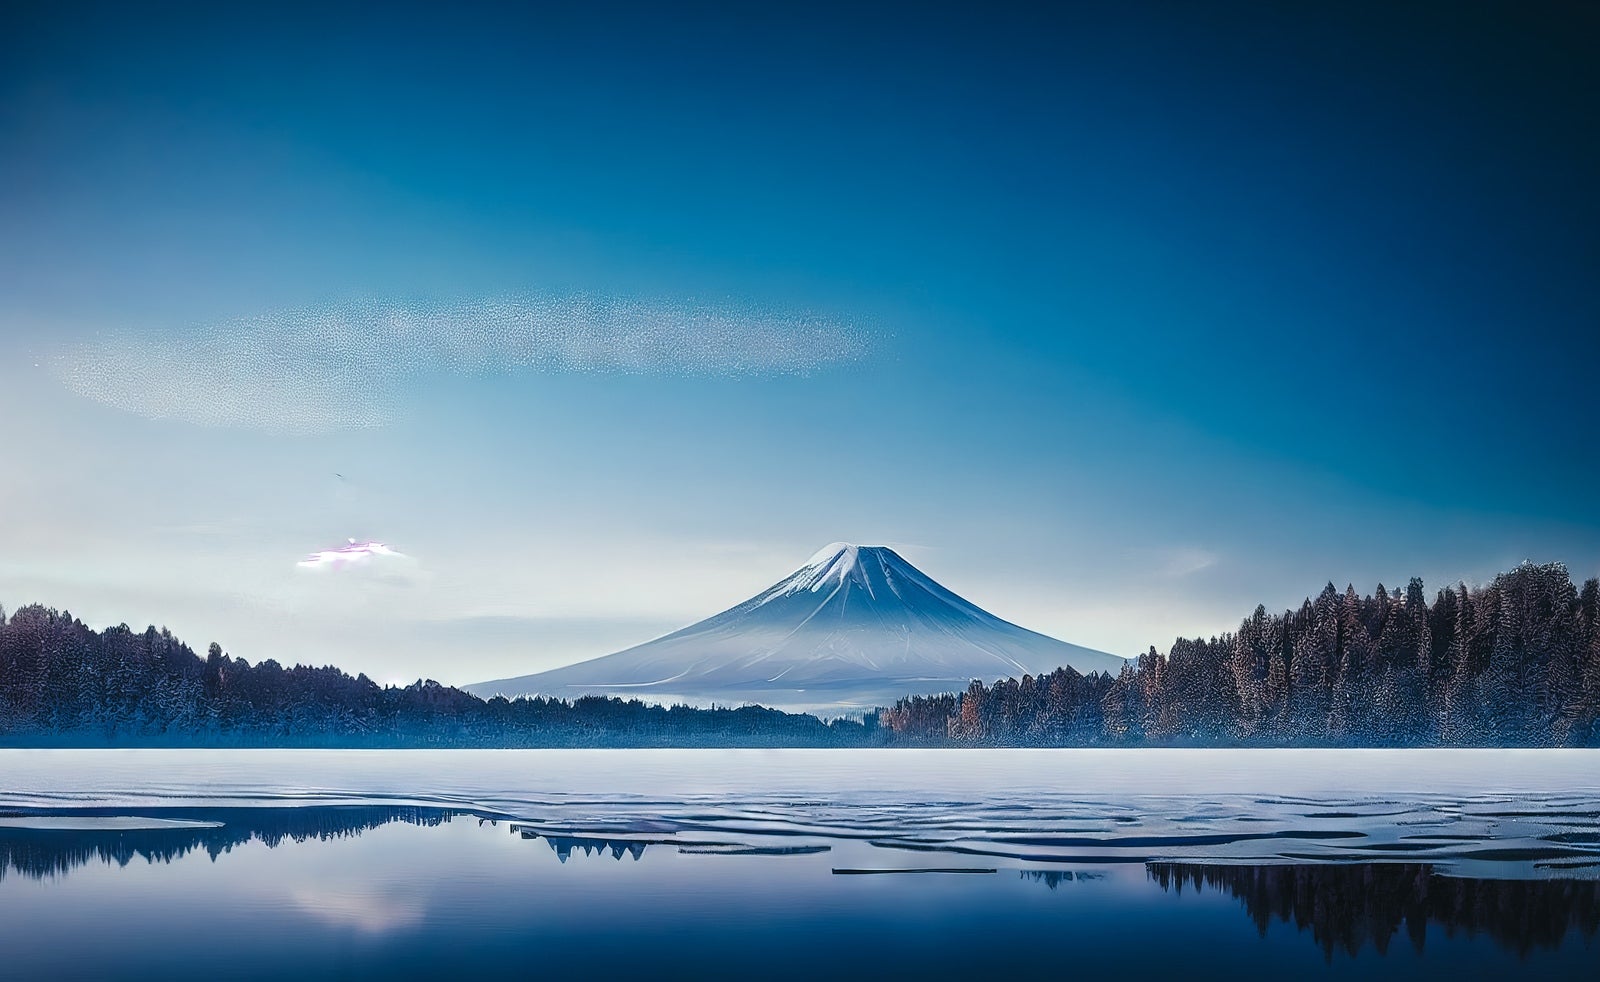 「凍った湖と雄大な雪山」の写真